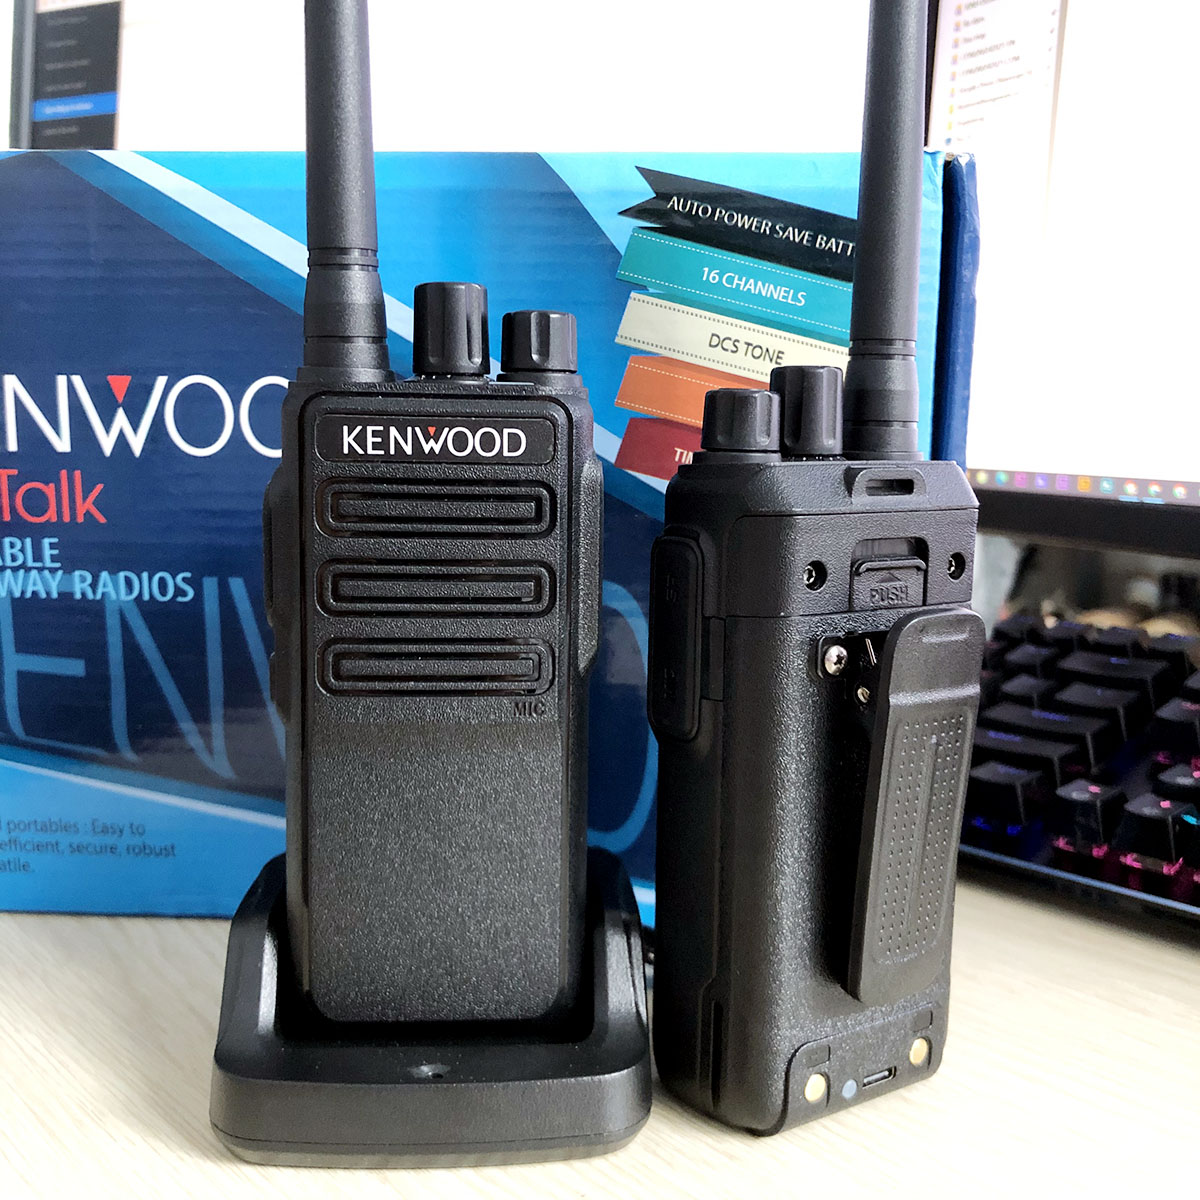 Bộ đàm Kenwood NX-450 kèm tai nghe Kenwood cao cấp | Bộ đàm dung lượng pin lớn, công suất phát cao – Hàng nhập khẩu